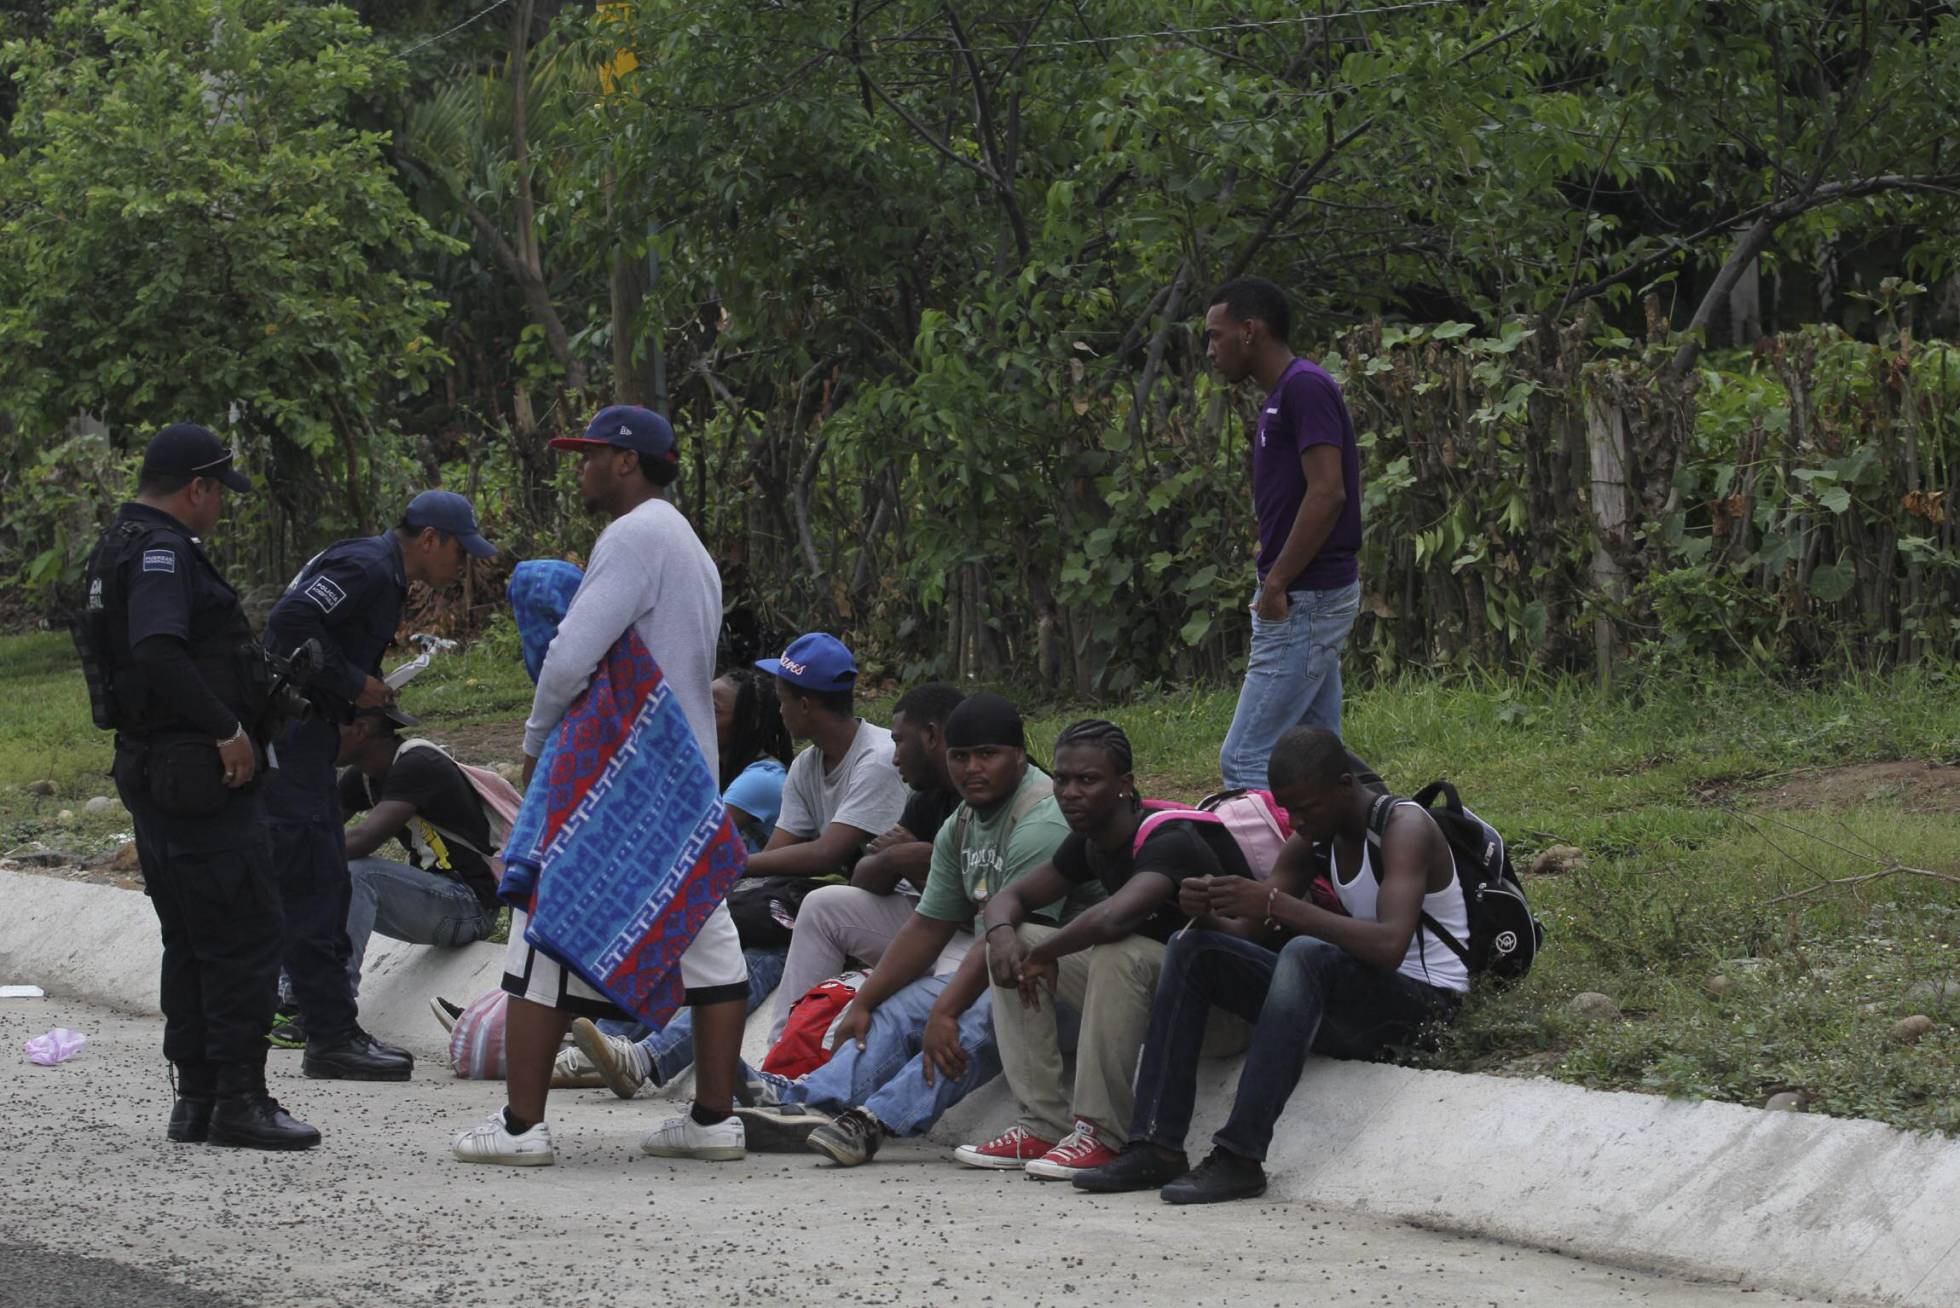  México detiene al día a 522 migrantes